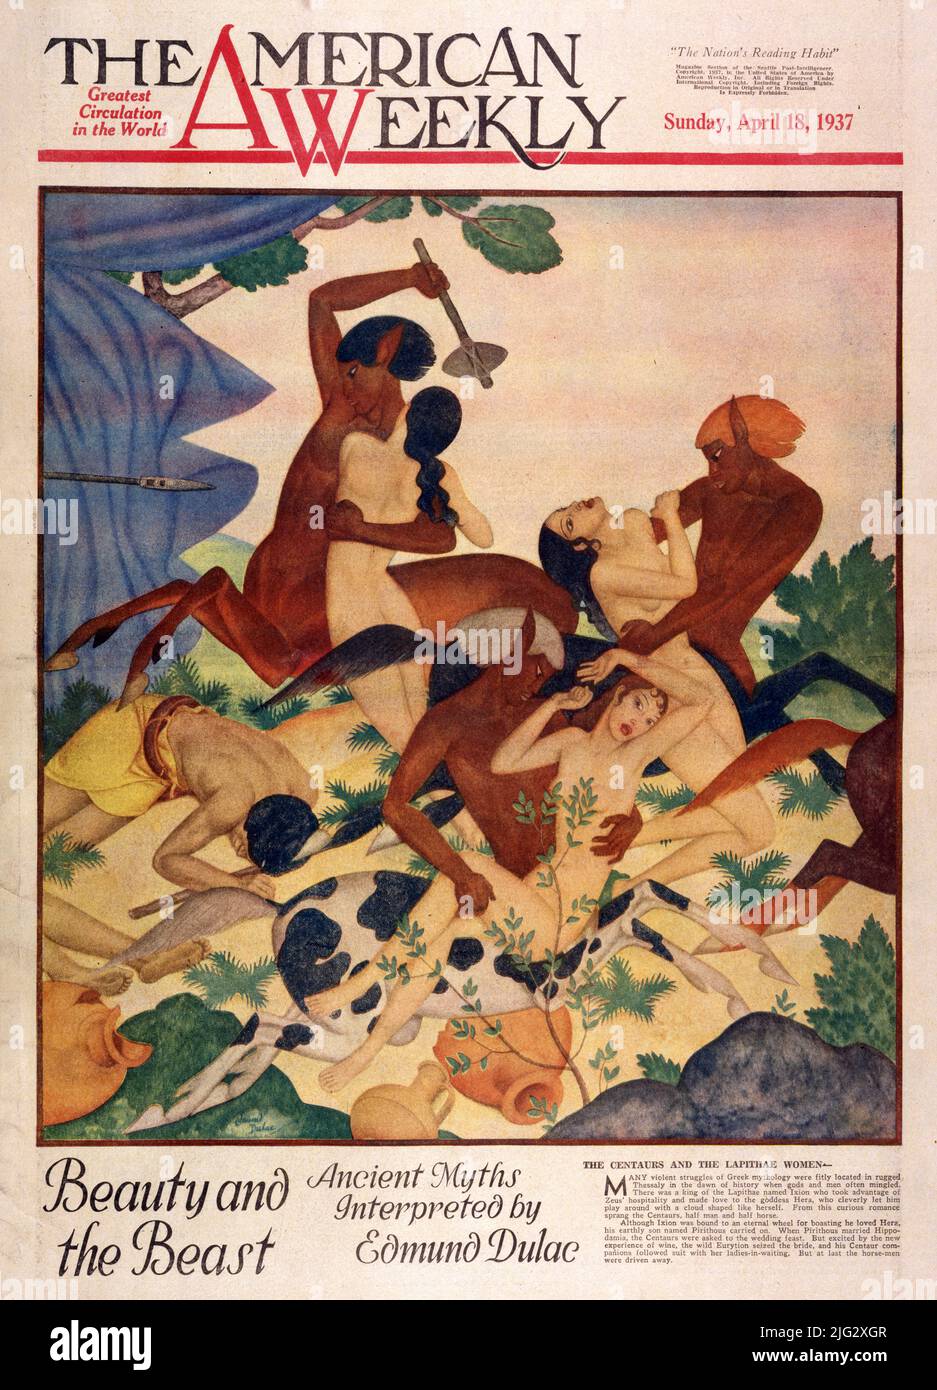 The Centauren and the Lapithae Women, veröffentlicht am 18,1937. April in der American Weekly Magazine, illustriert von Edmund Dulac für die Schönheit und das Biest. Stockfoto